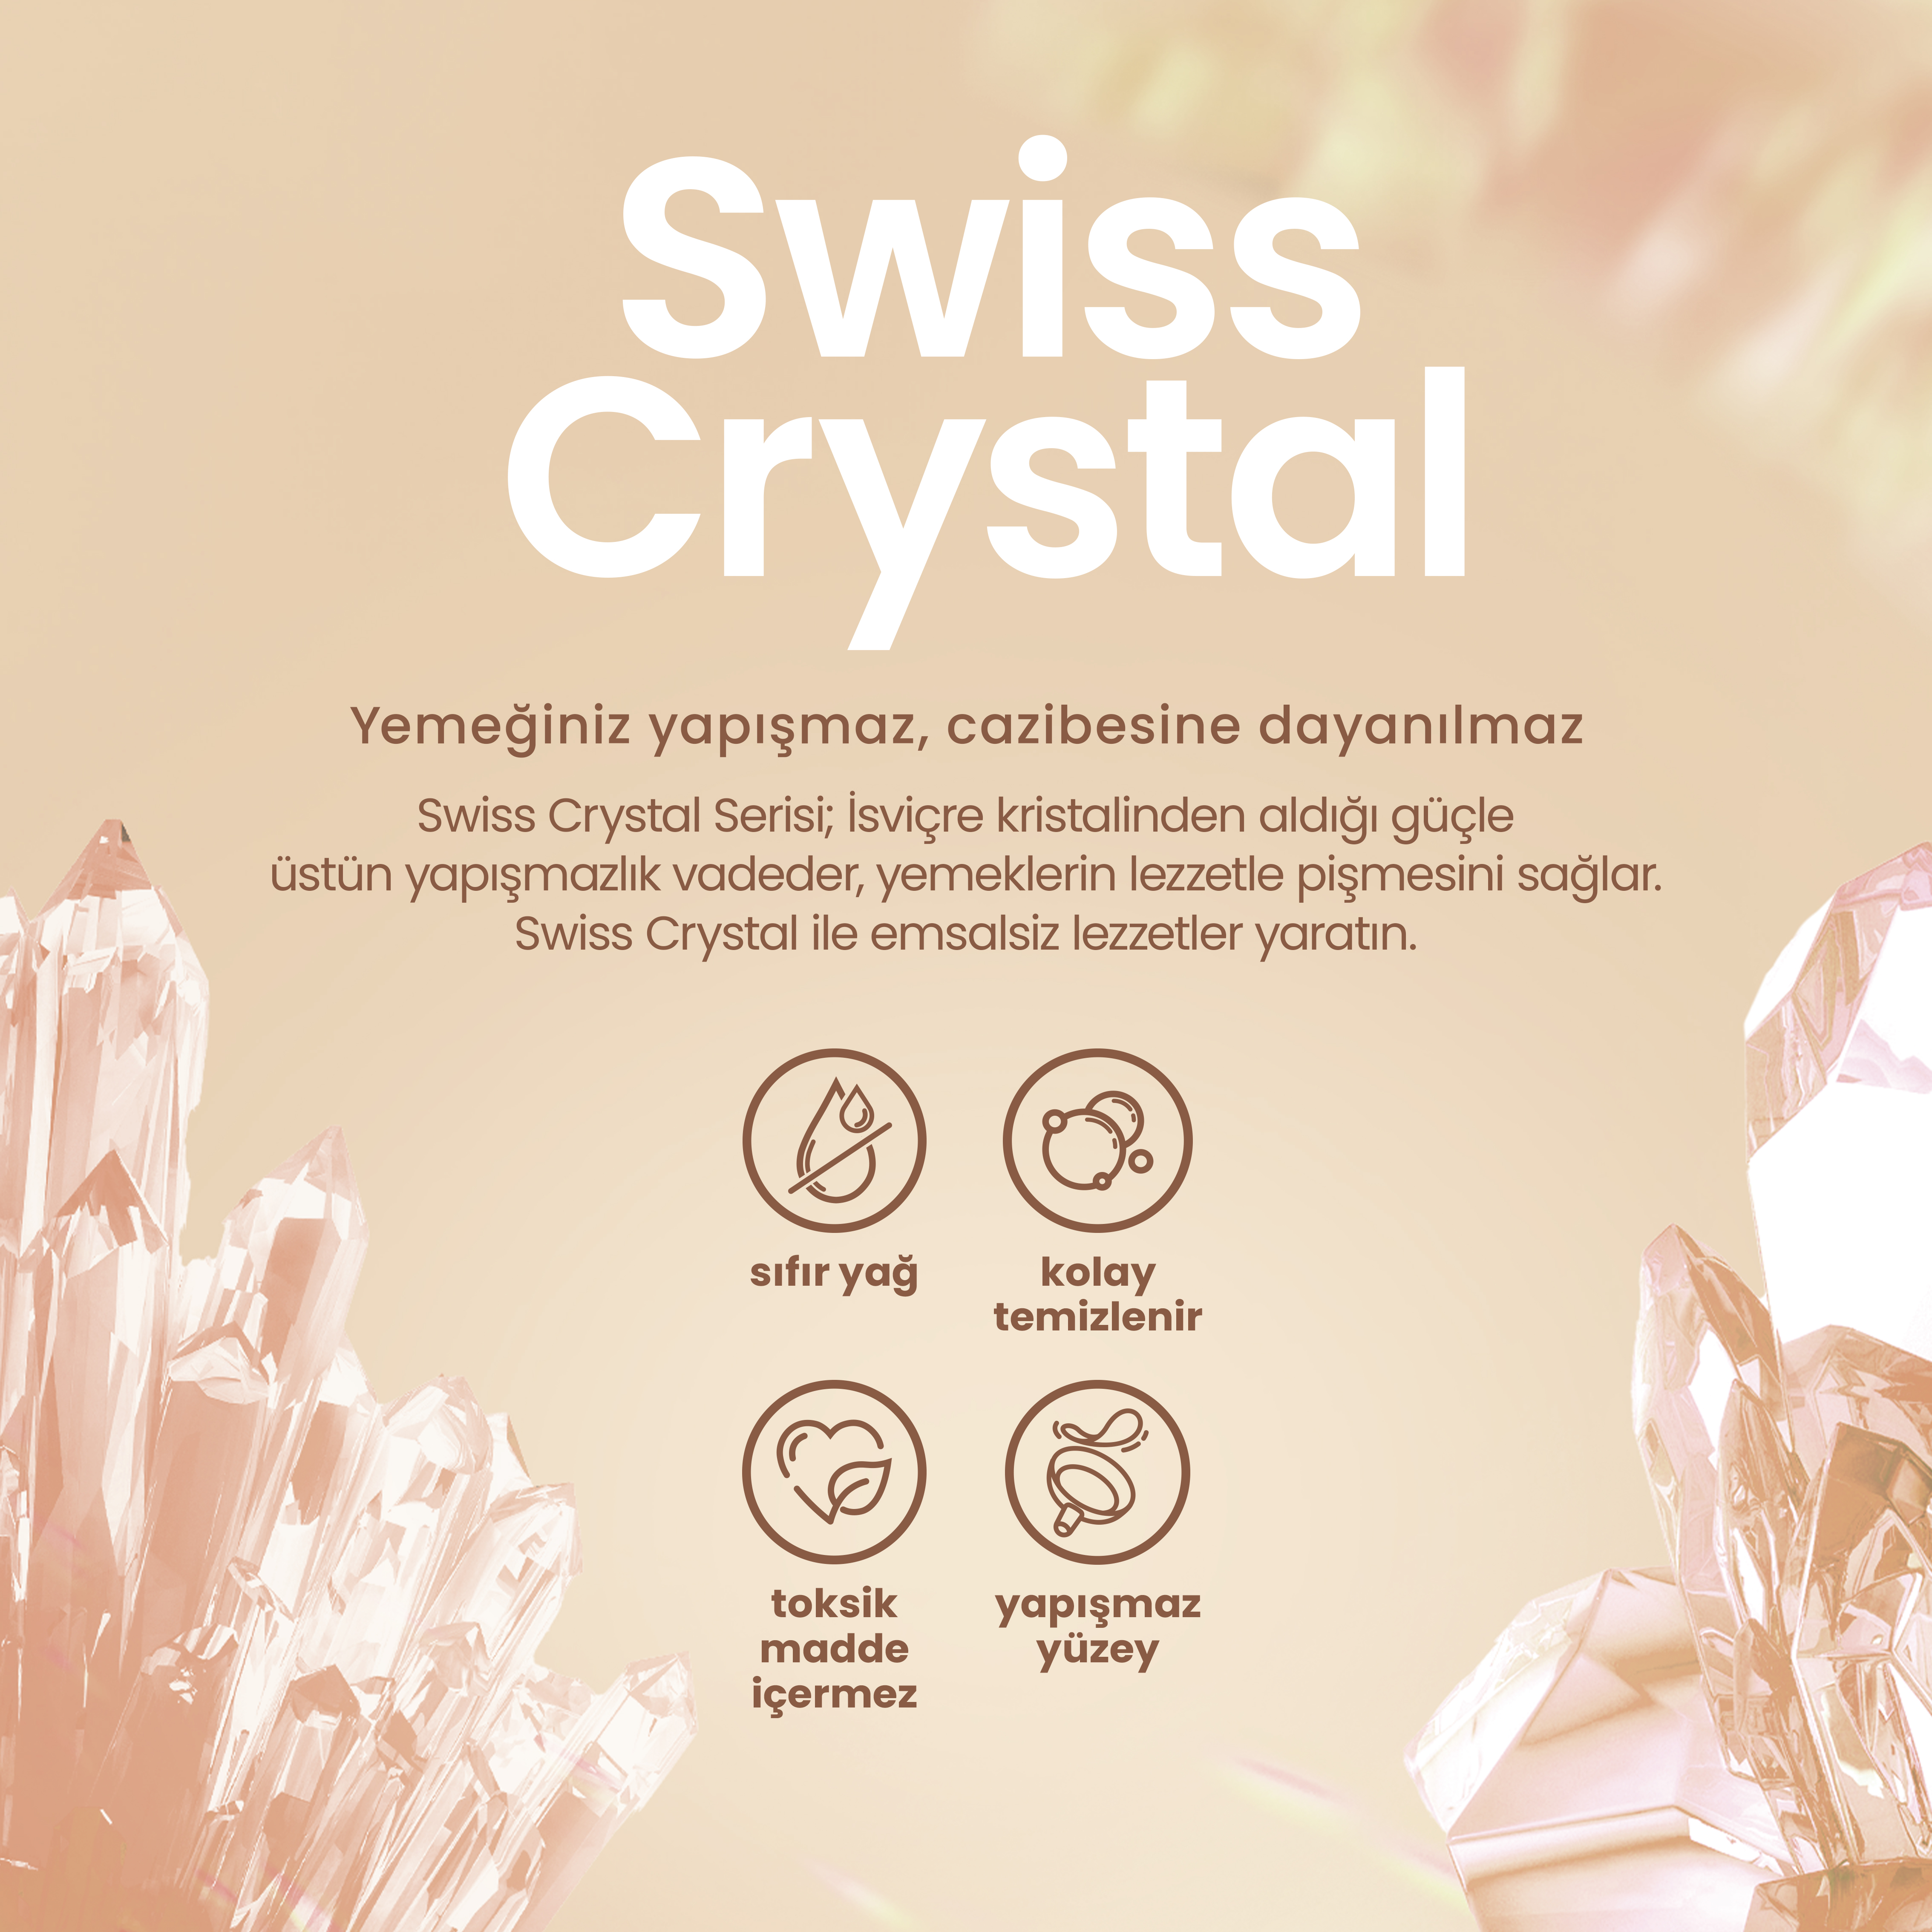 one-pager-Swiss-Crystal-Bilgilendirme.jpg (3.83 MB)